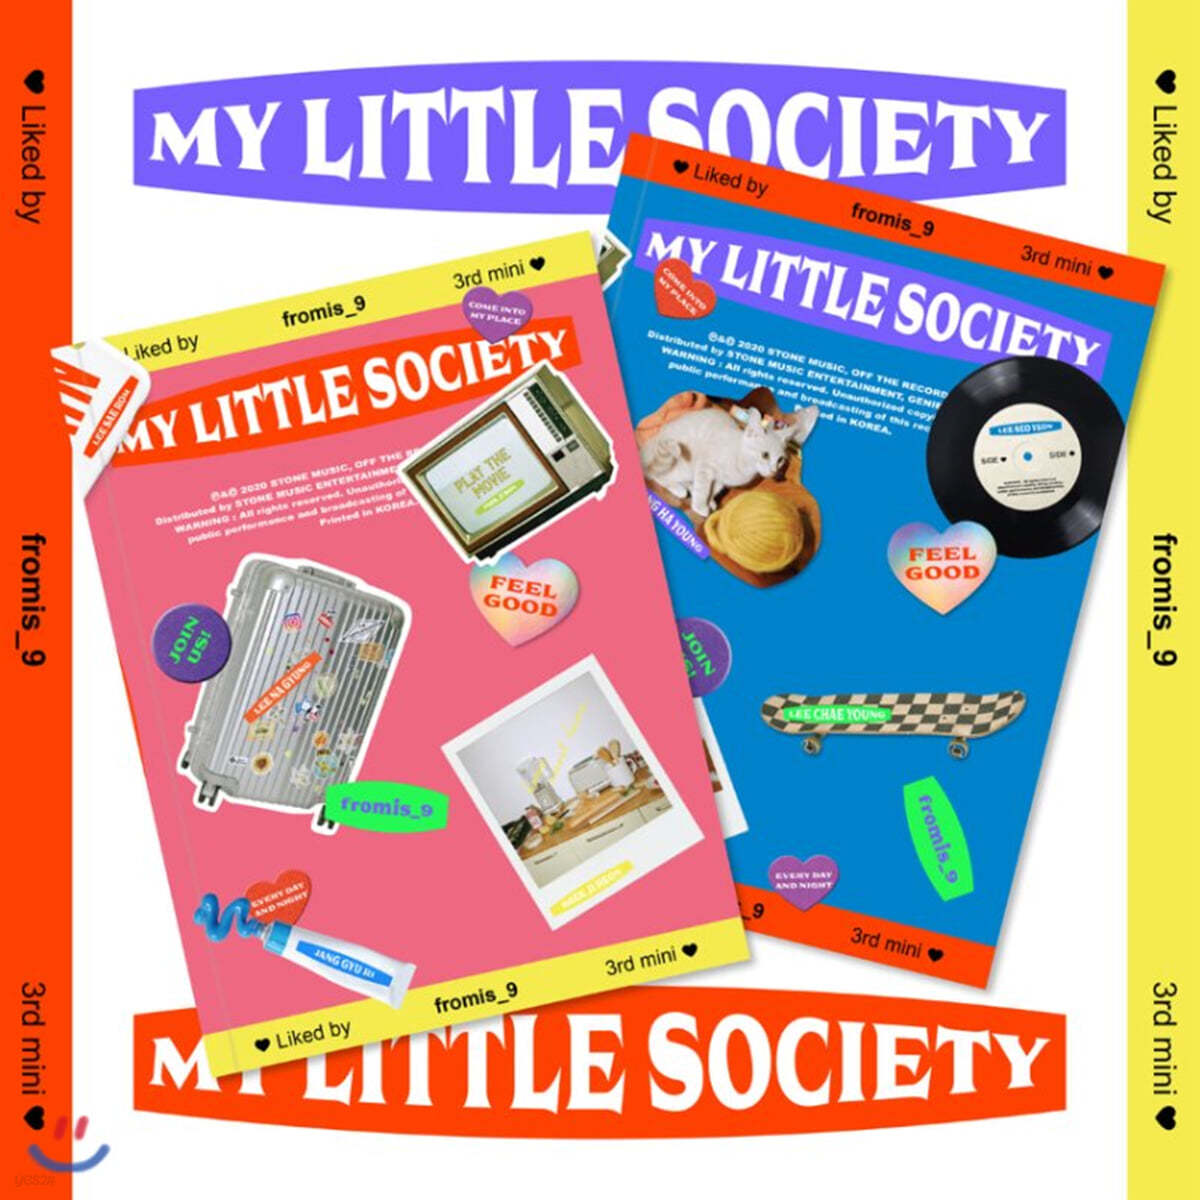 프로미스나인 (fromis_9) - 미니앨범 3집 : My Little Society [My society/My account ver. 중 랜덤발송]